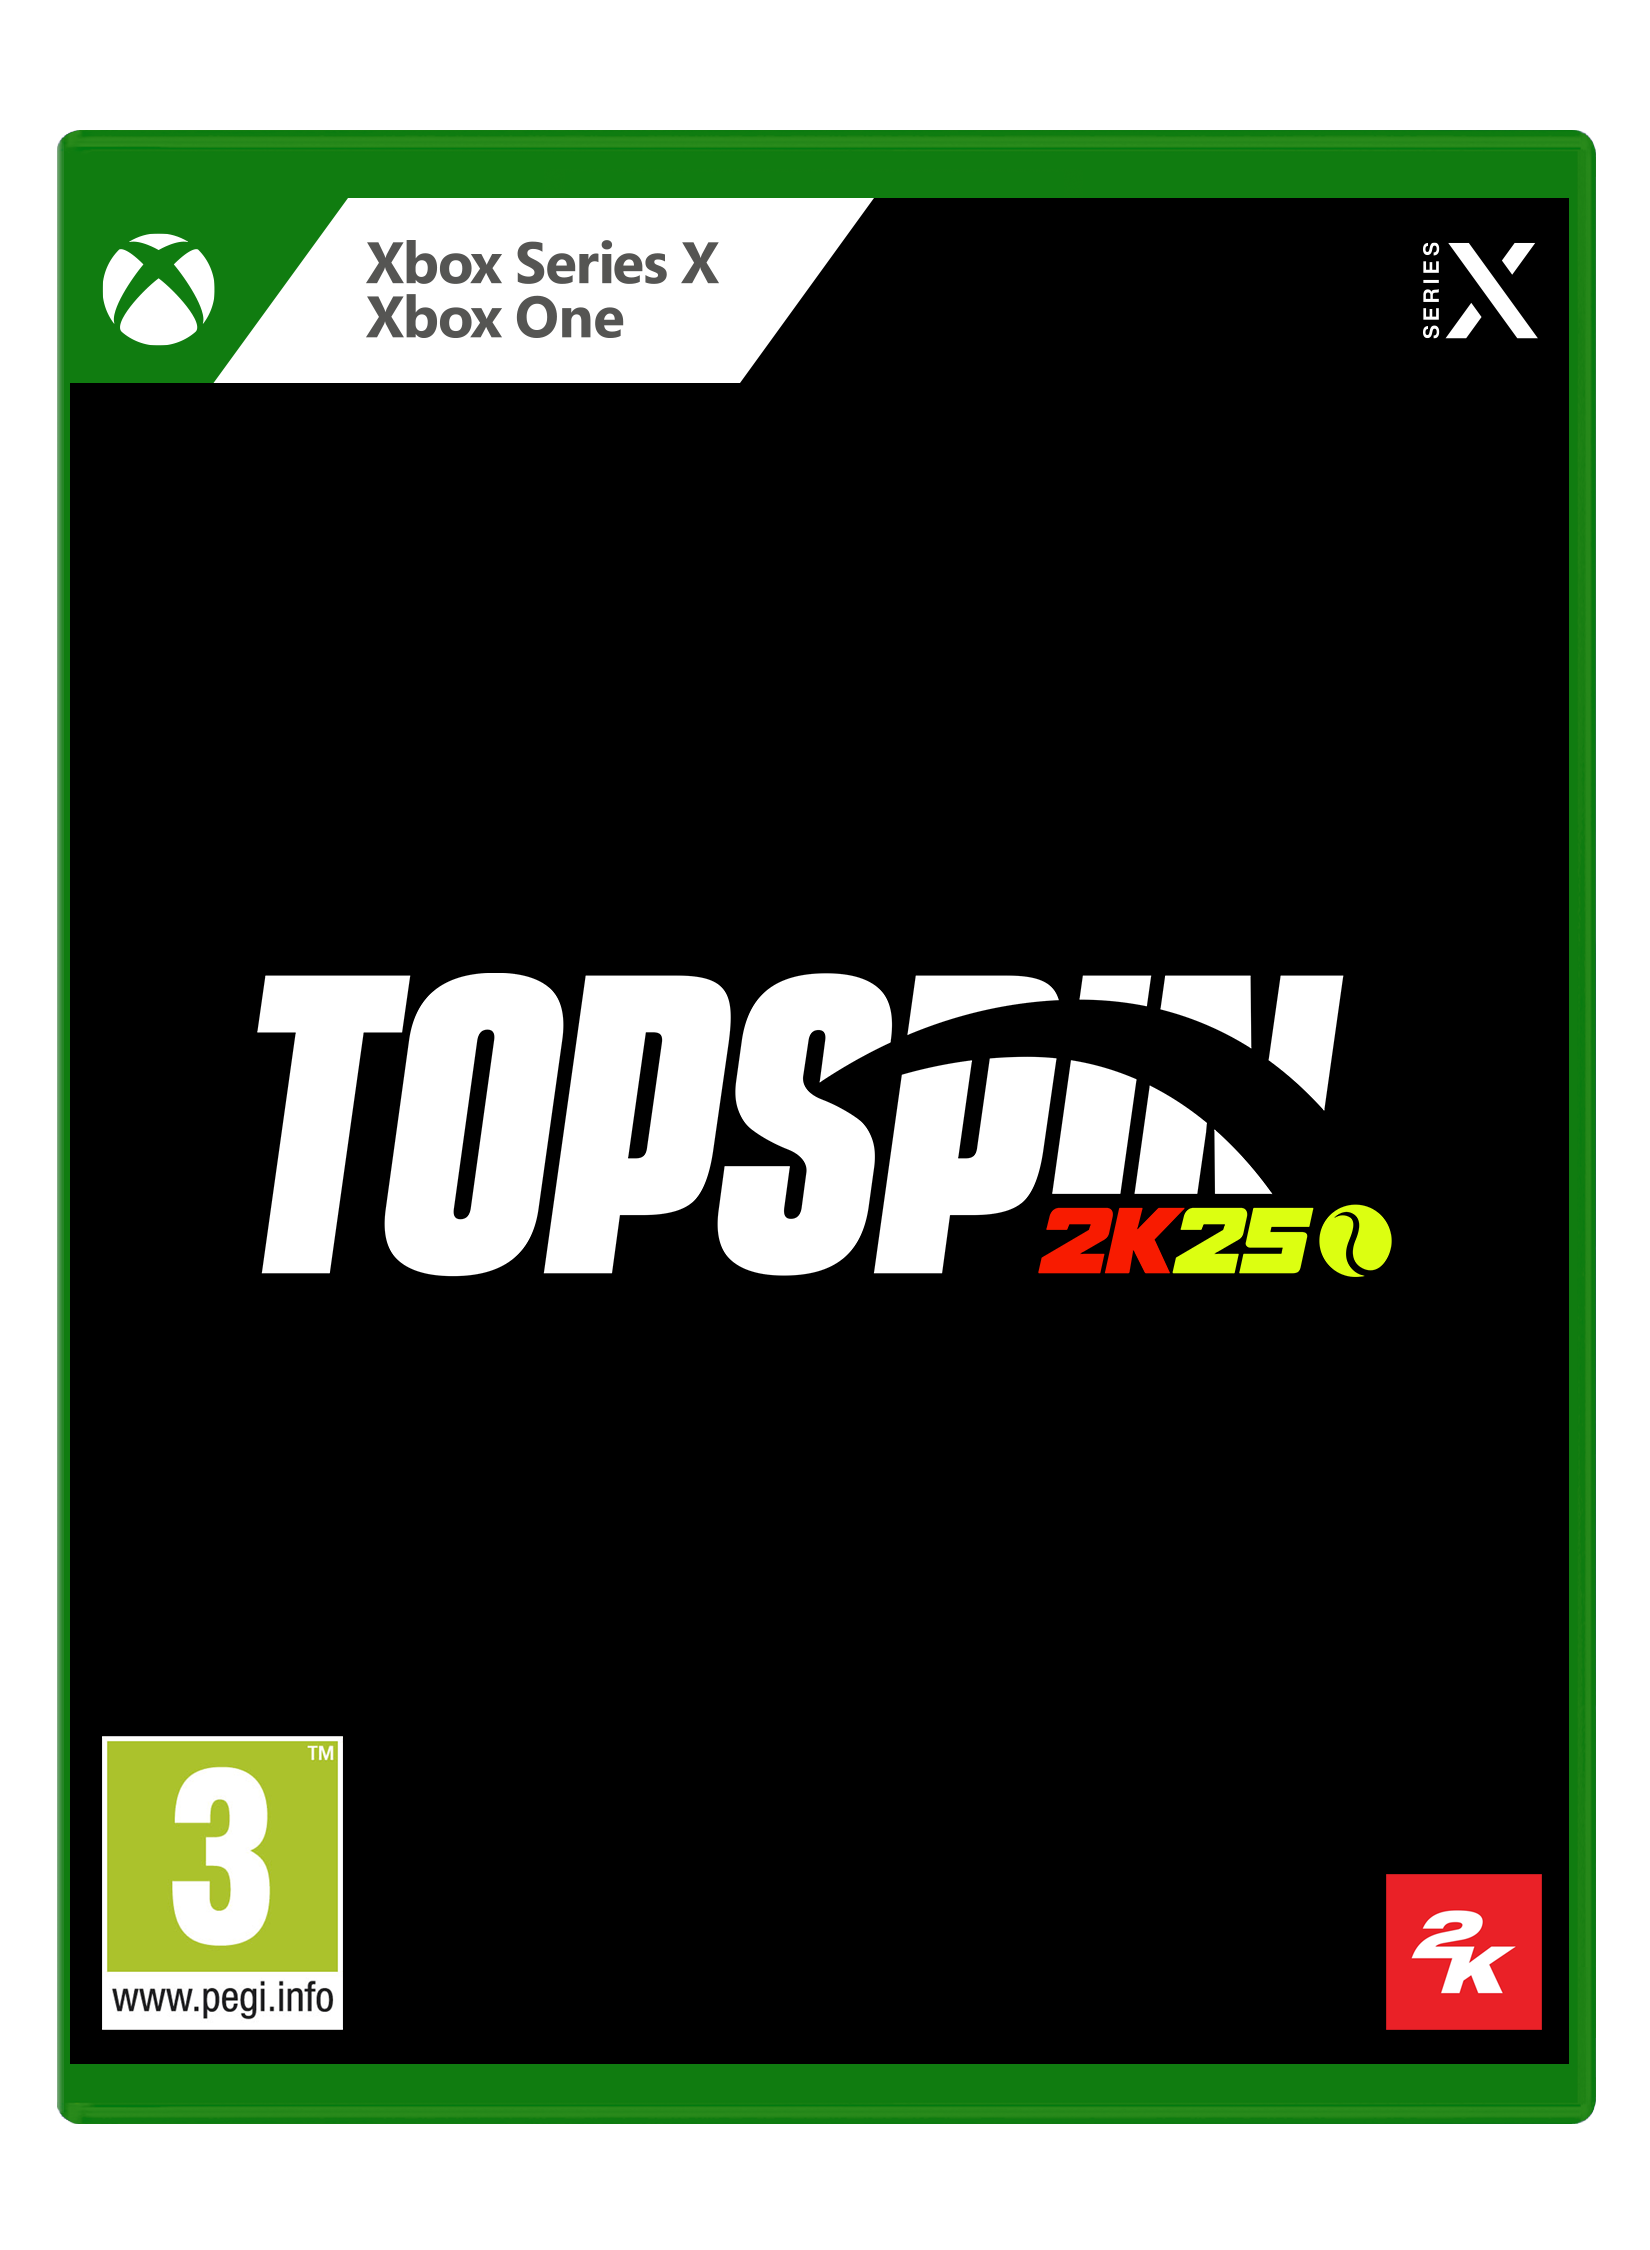 Xbox Series X Top Skin 2K25 - Albagame